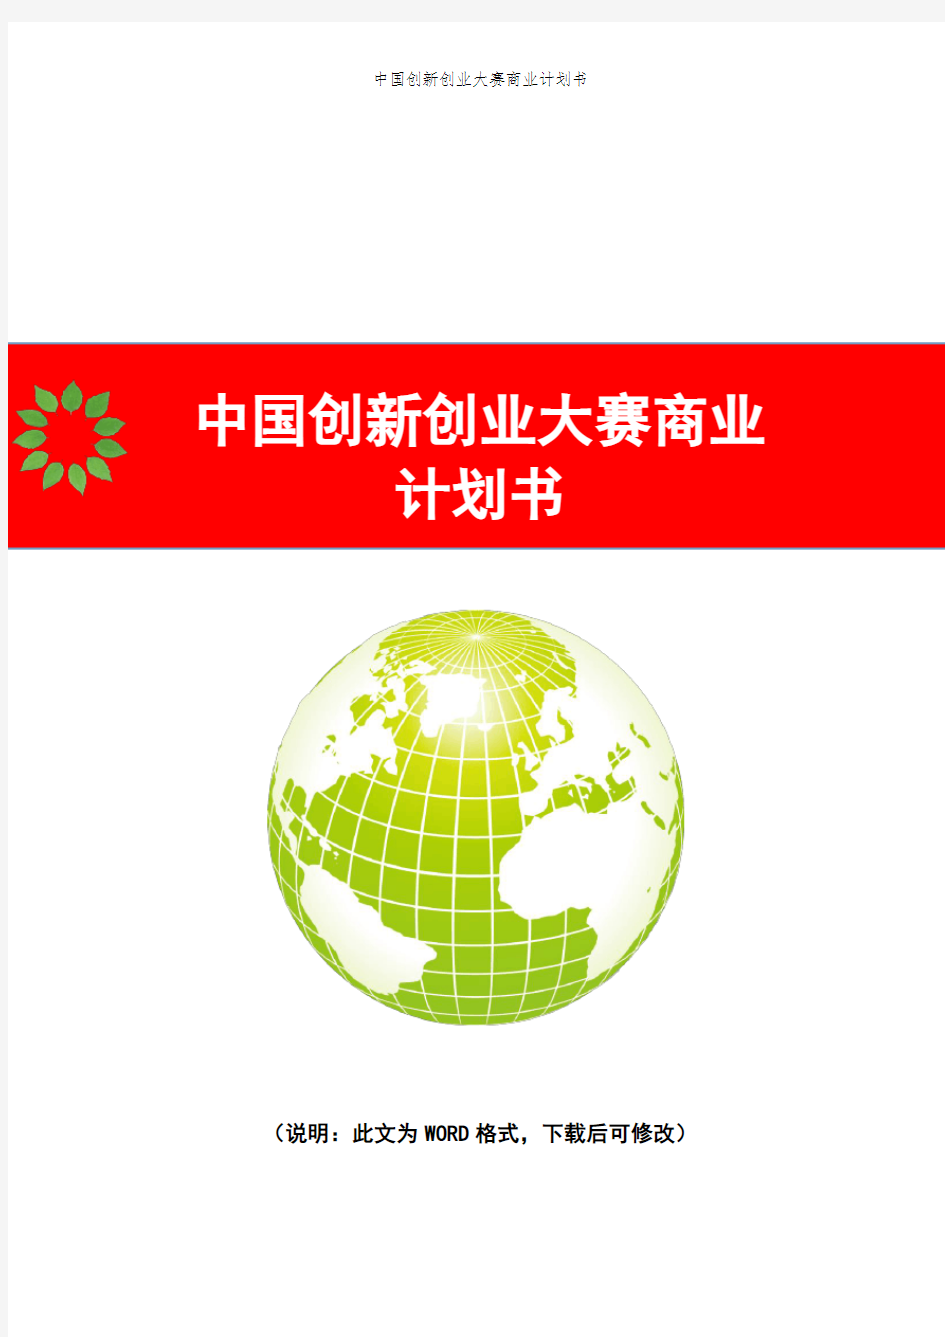 互联网+中国创新创业大赛商业计划书(模板)